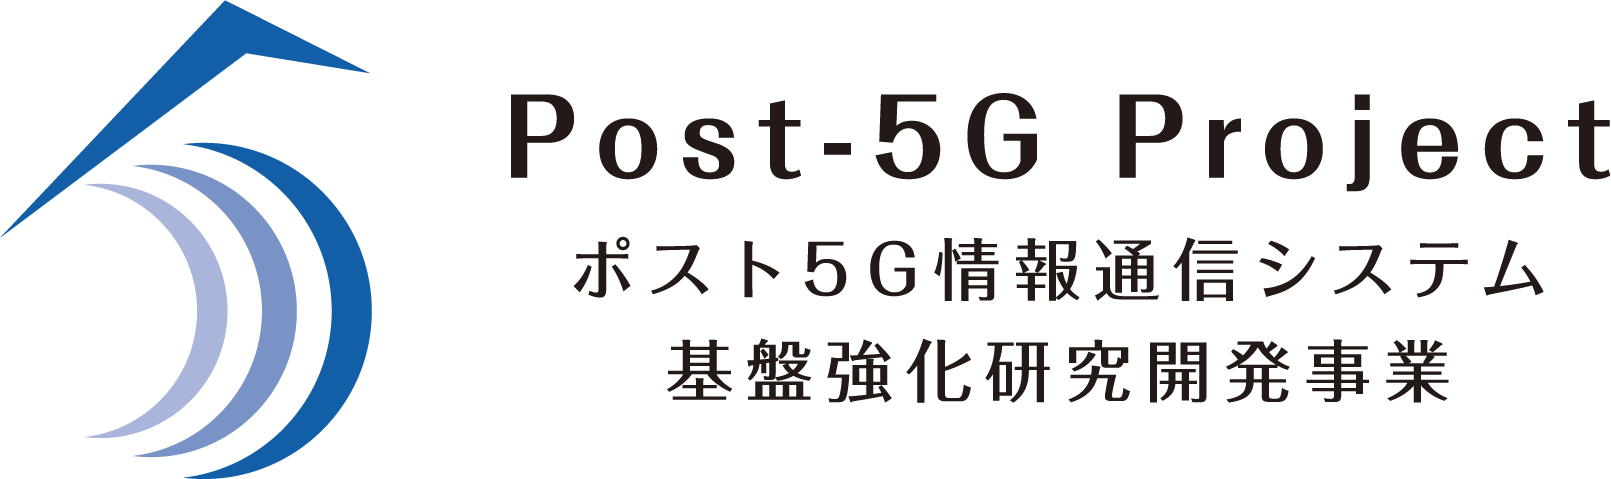 ポスト5G情報通信システム基盤強化研究開発事業バナー画像